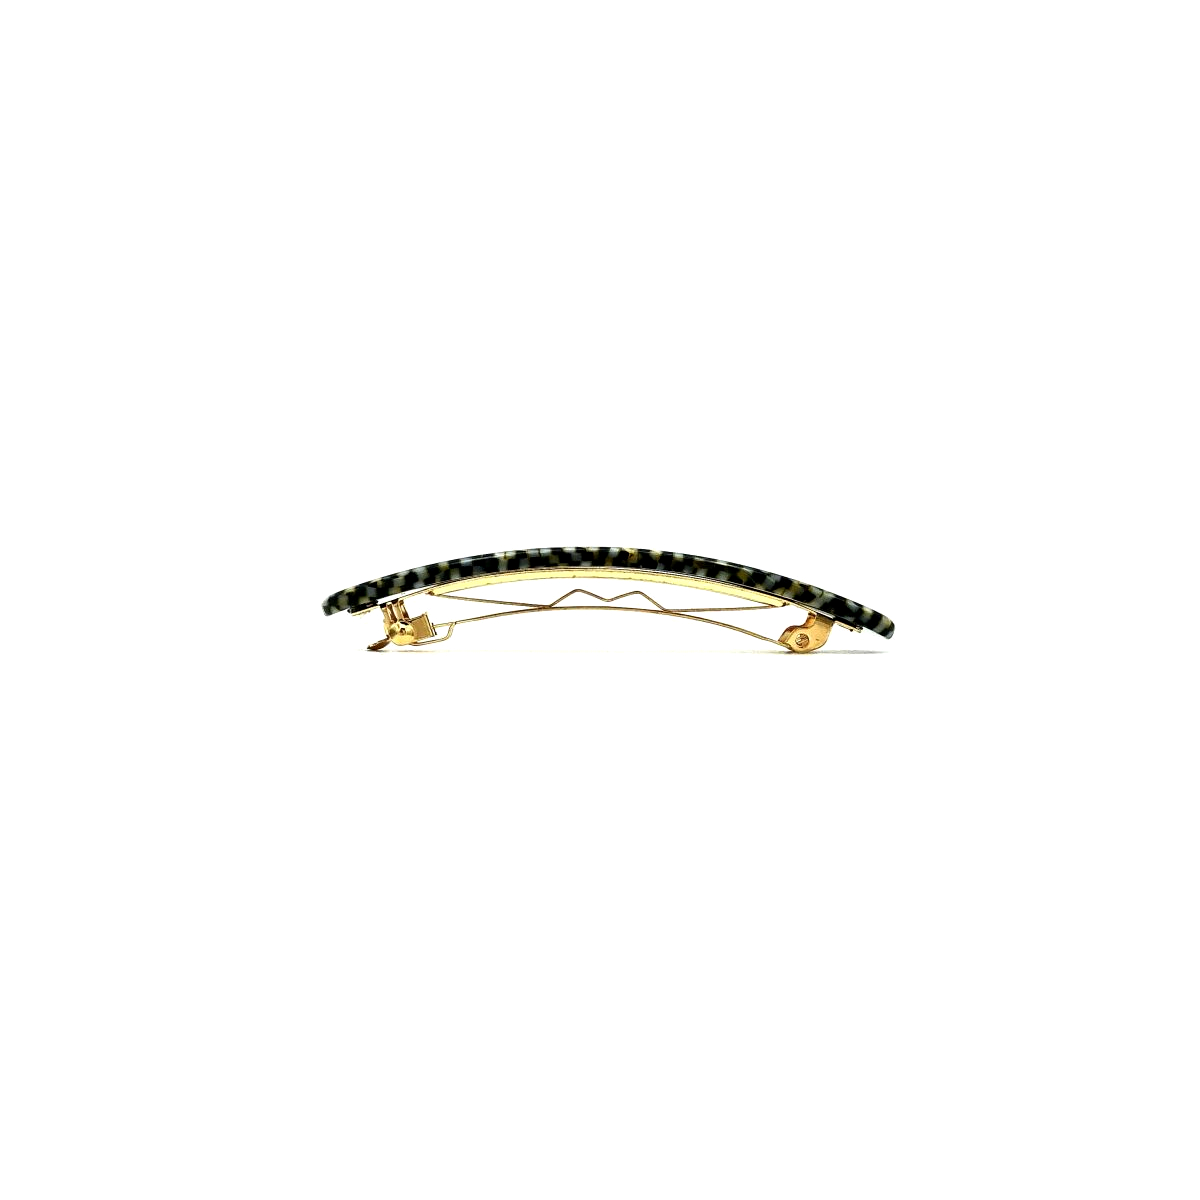 Haarspange silbergrau/schwarz - klein, flach - 7,7 cm